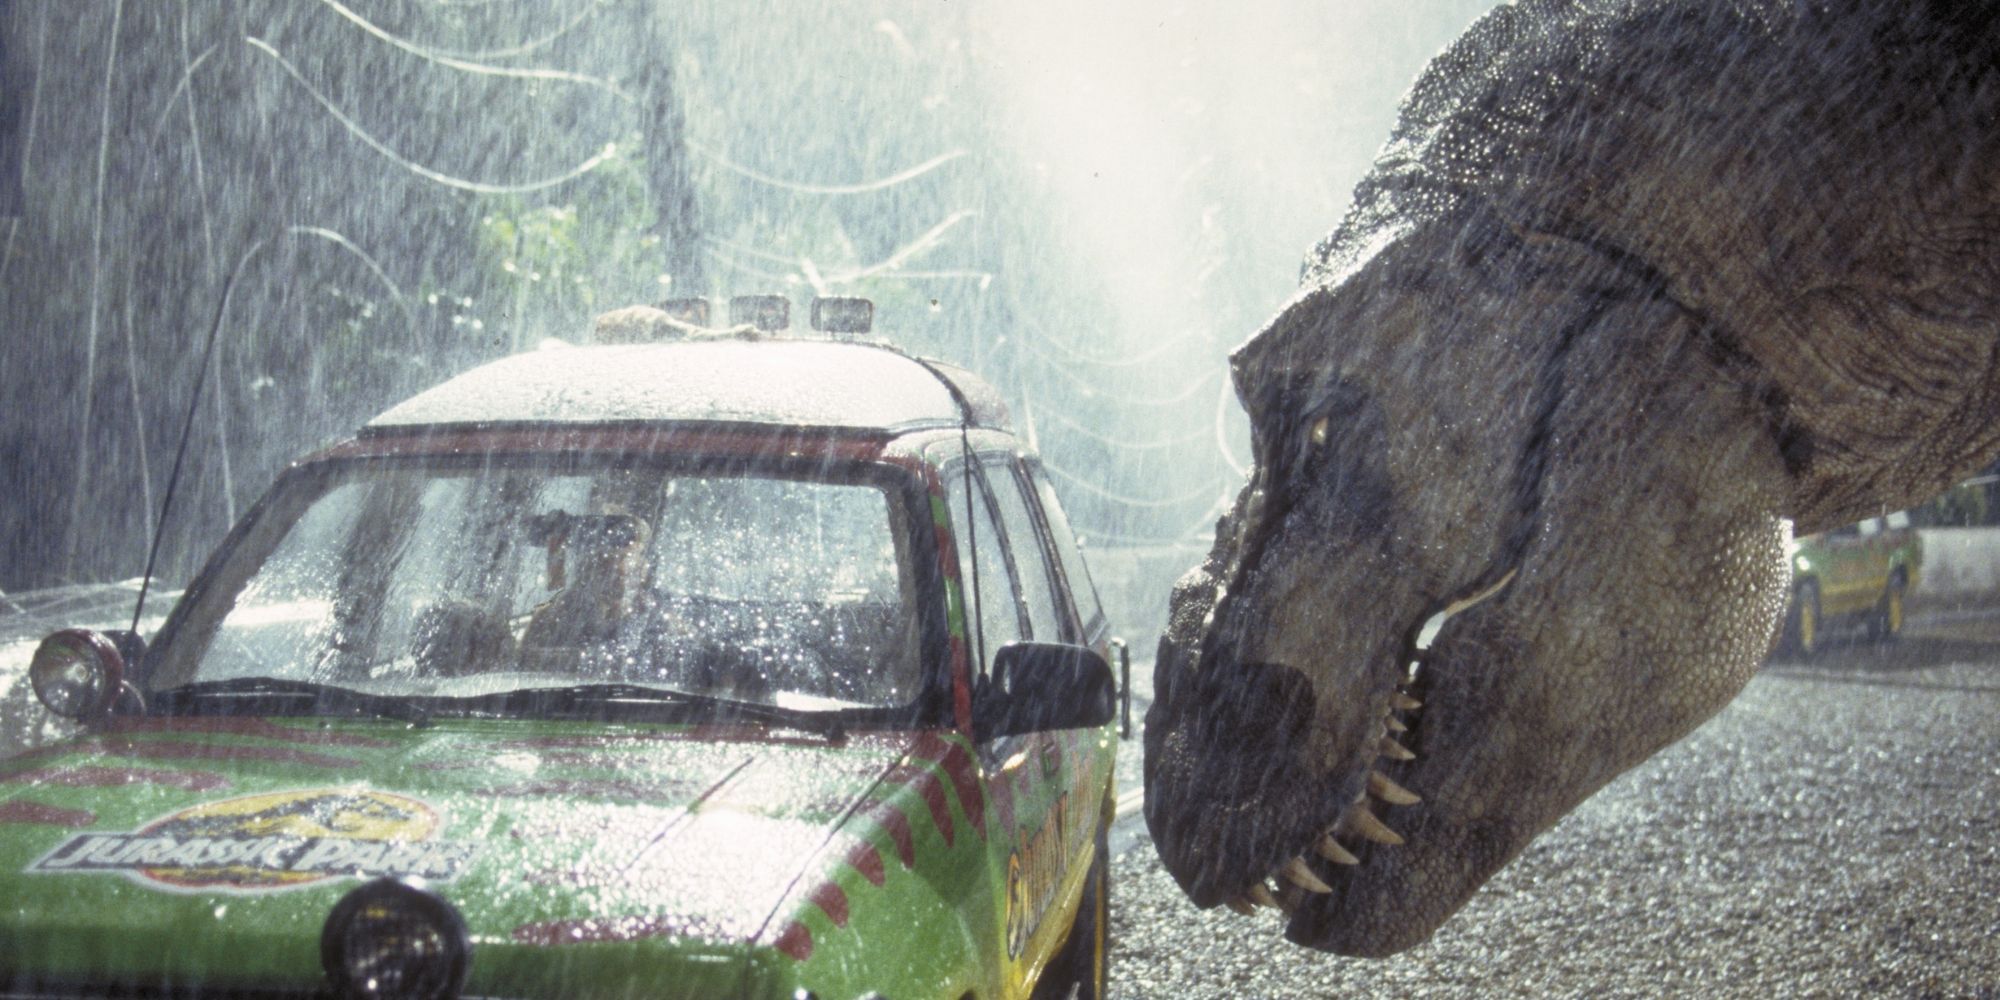 A dinosaur staring at a Jurassic Park vehicle